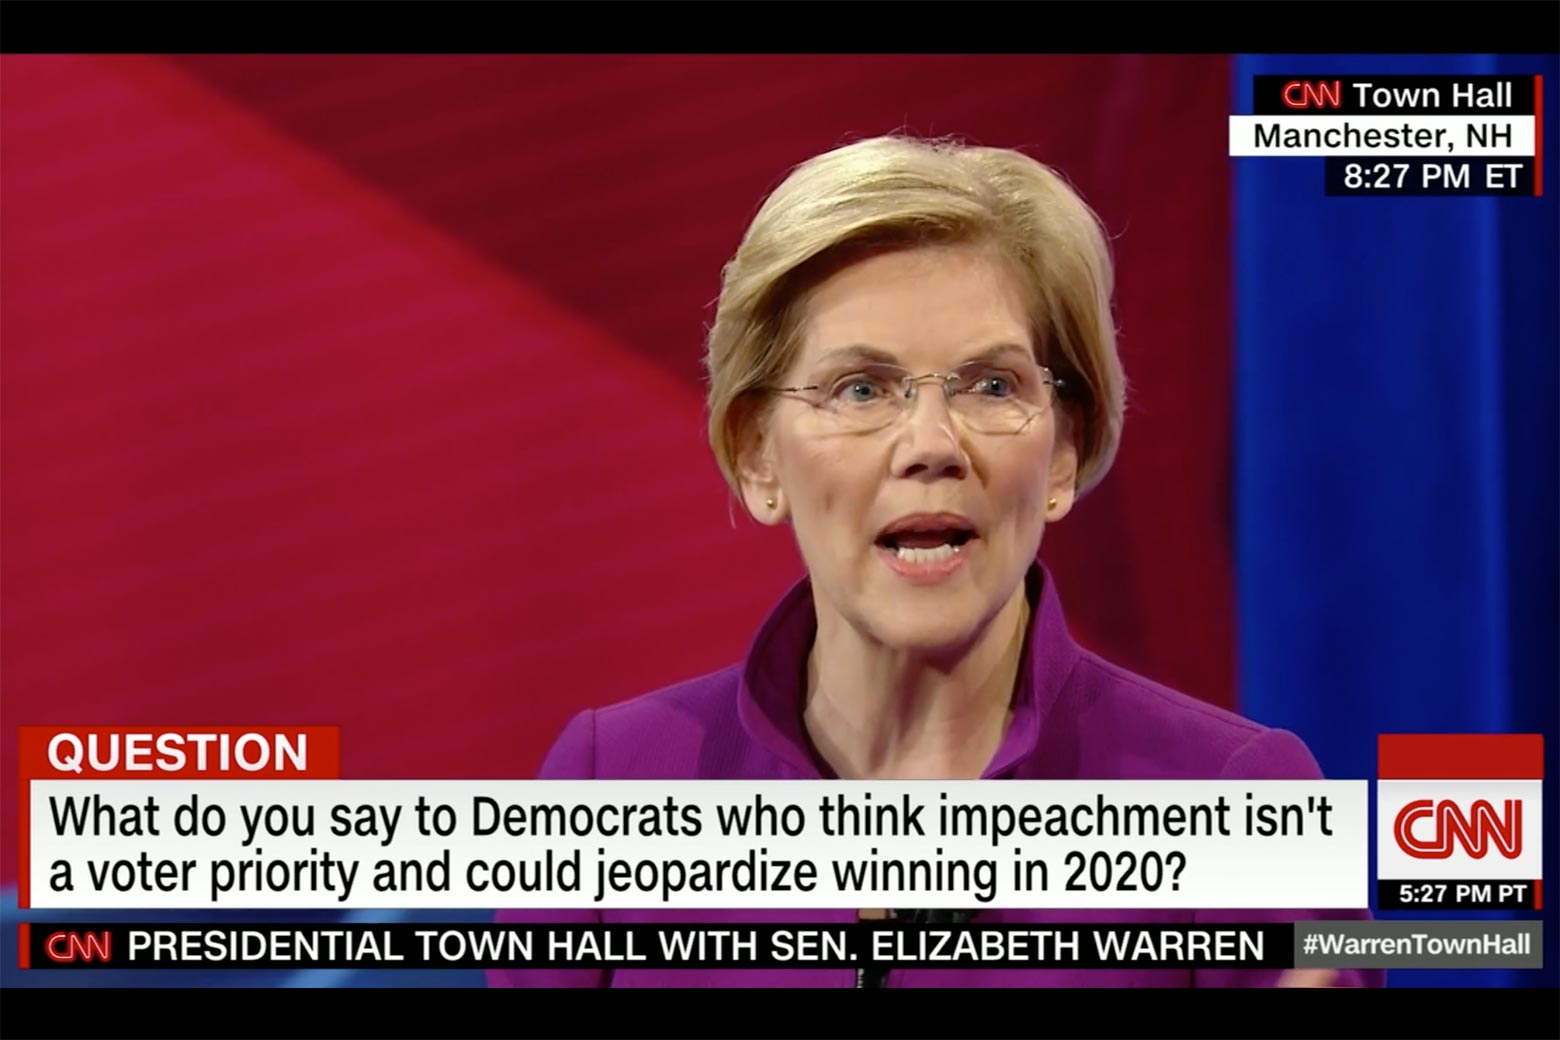 Elizabeth Warren shown on screen answering questions on CNN.